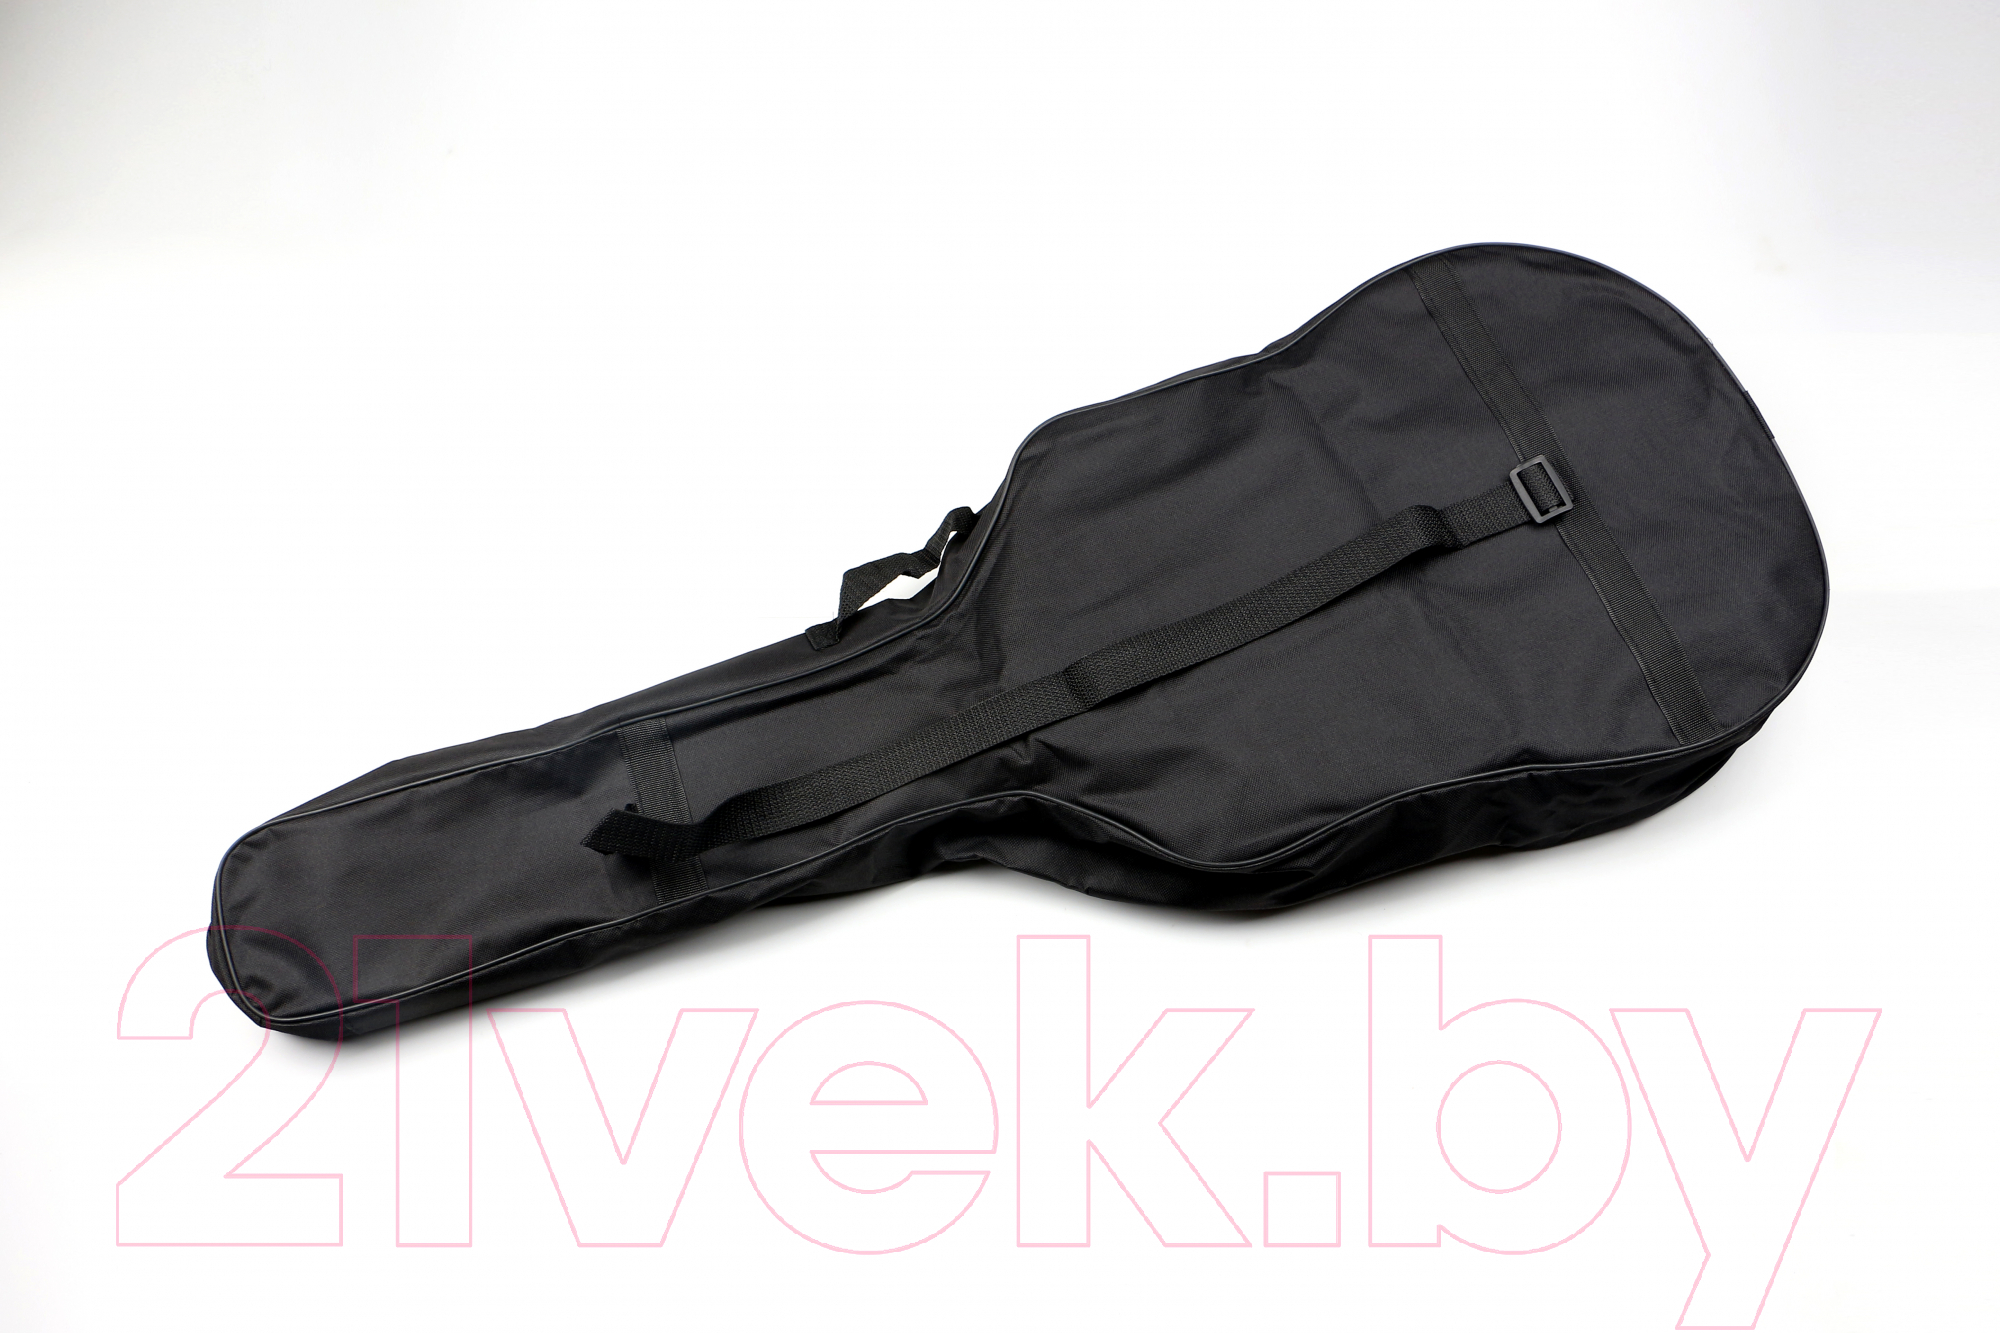 Чехол для гитары Sevillia Covers GB-W38 BK